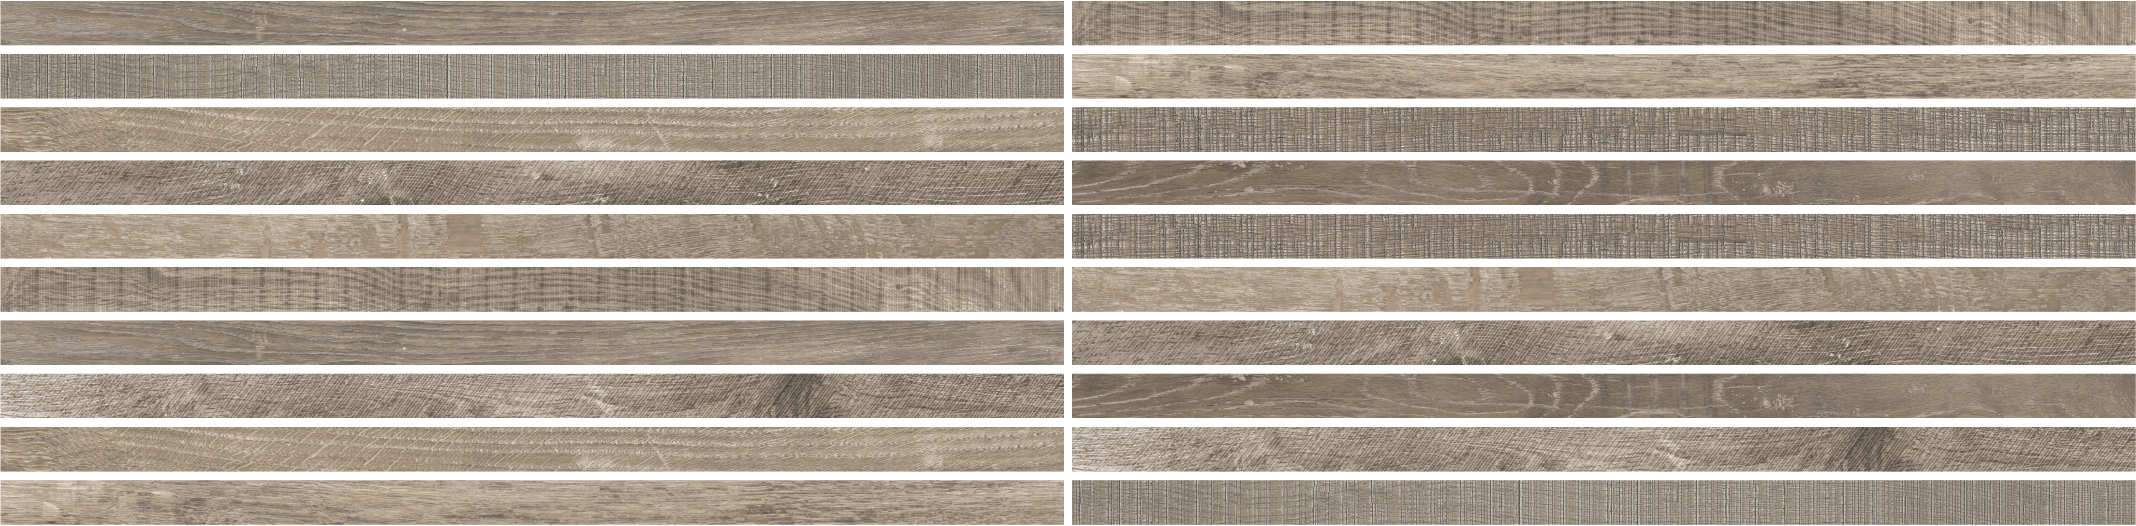 Opus 2x48 Greige Blend Wood Look Porcelain Tile - SAMPLES